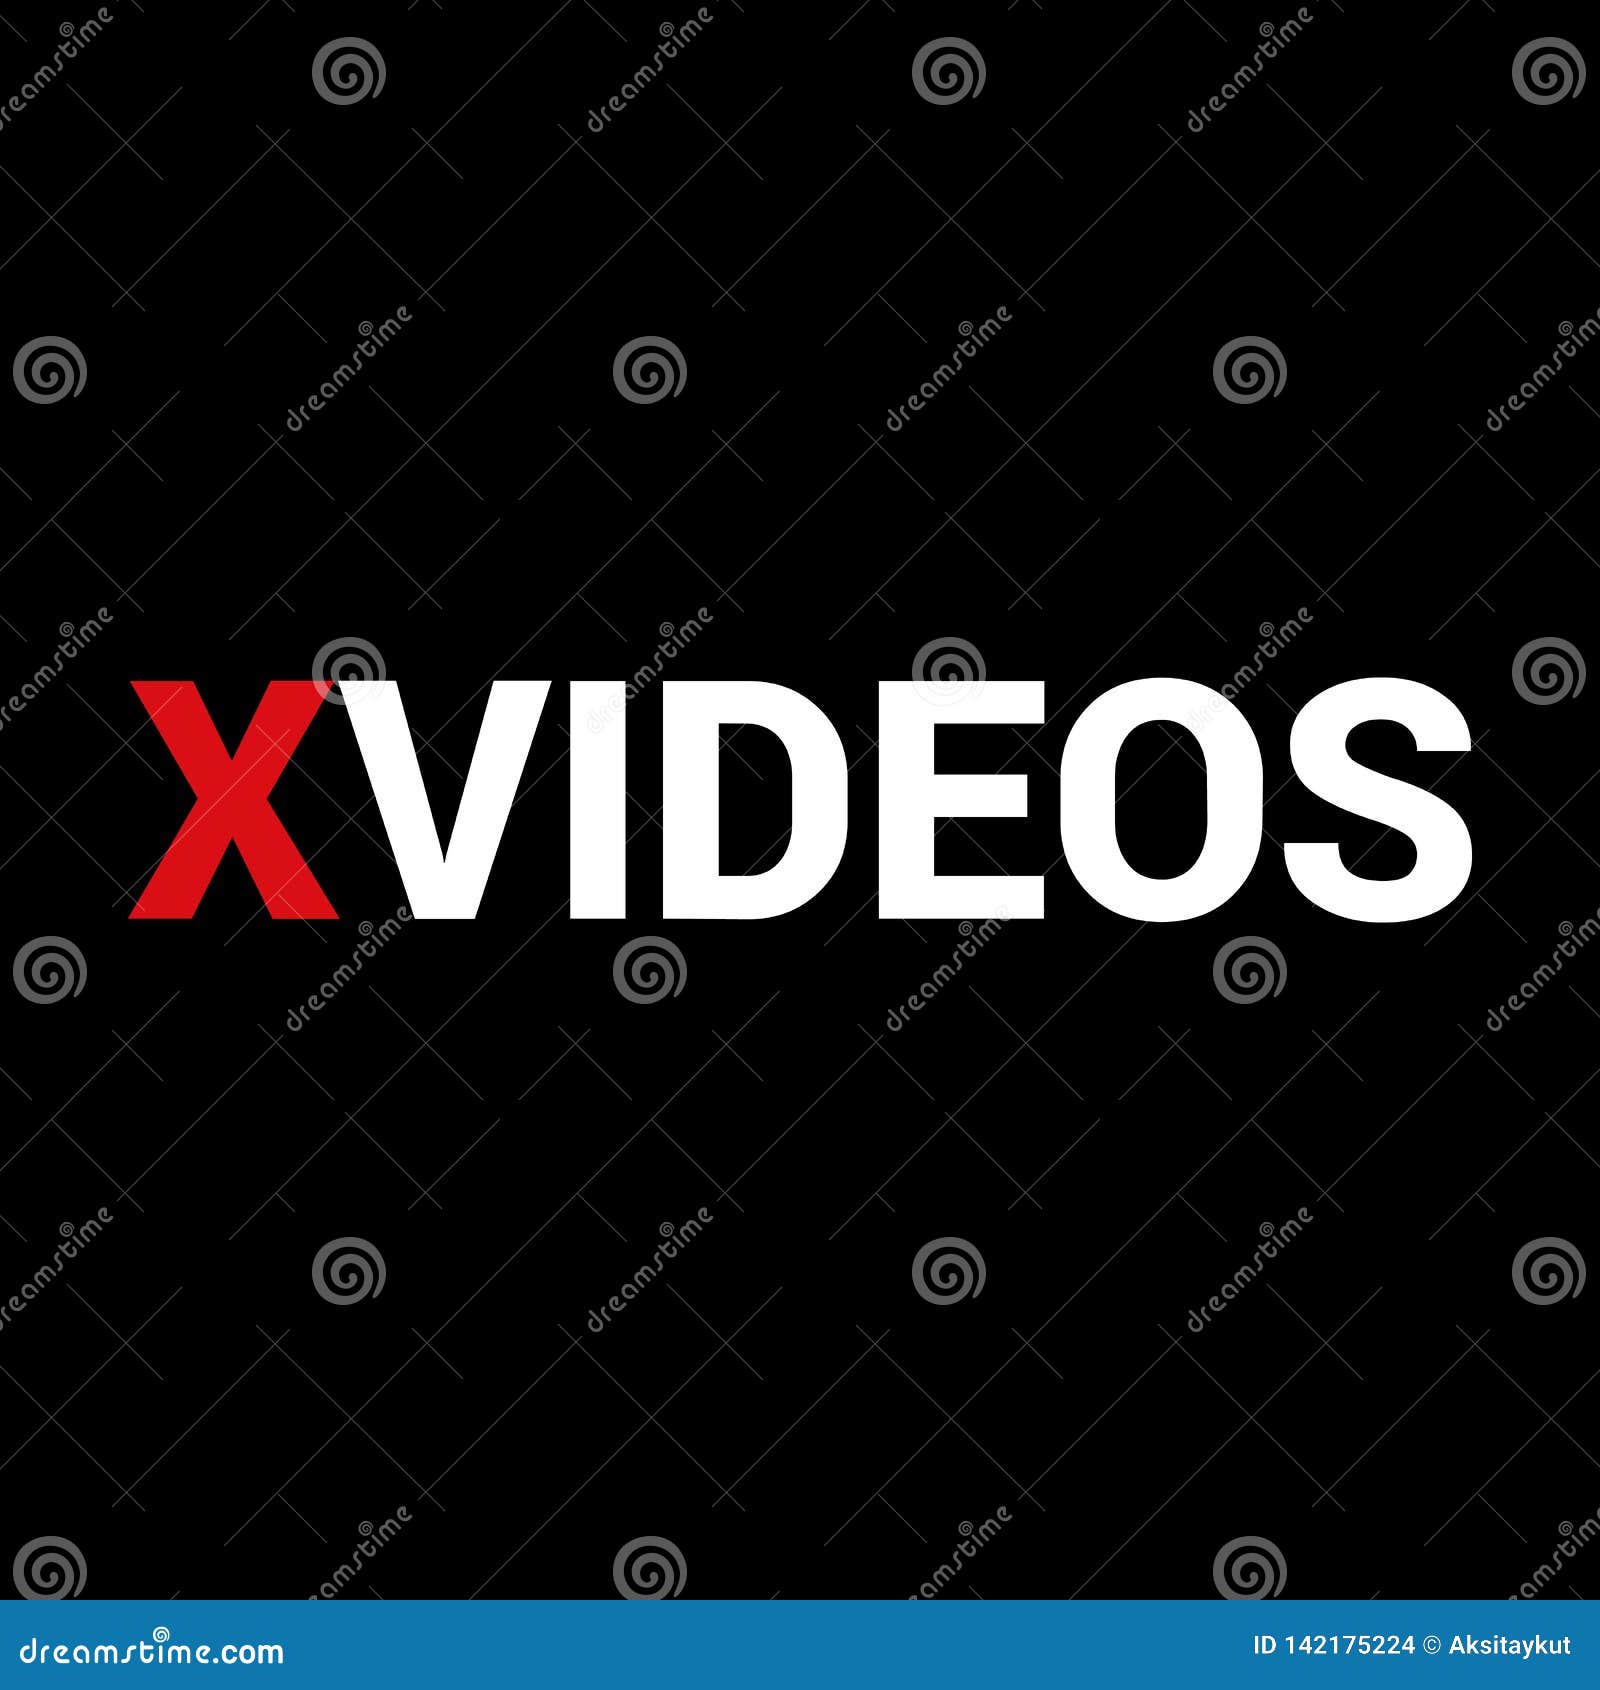 Xvideo.com.es